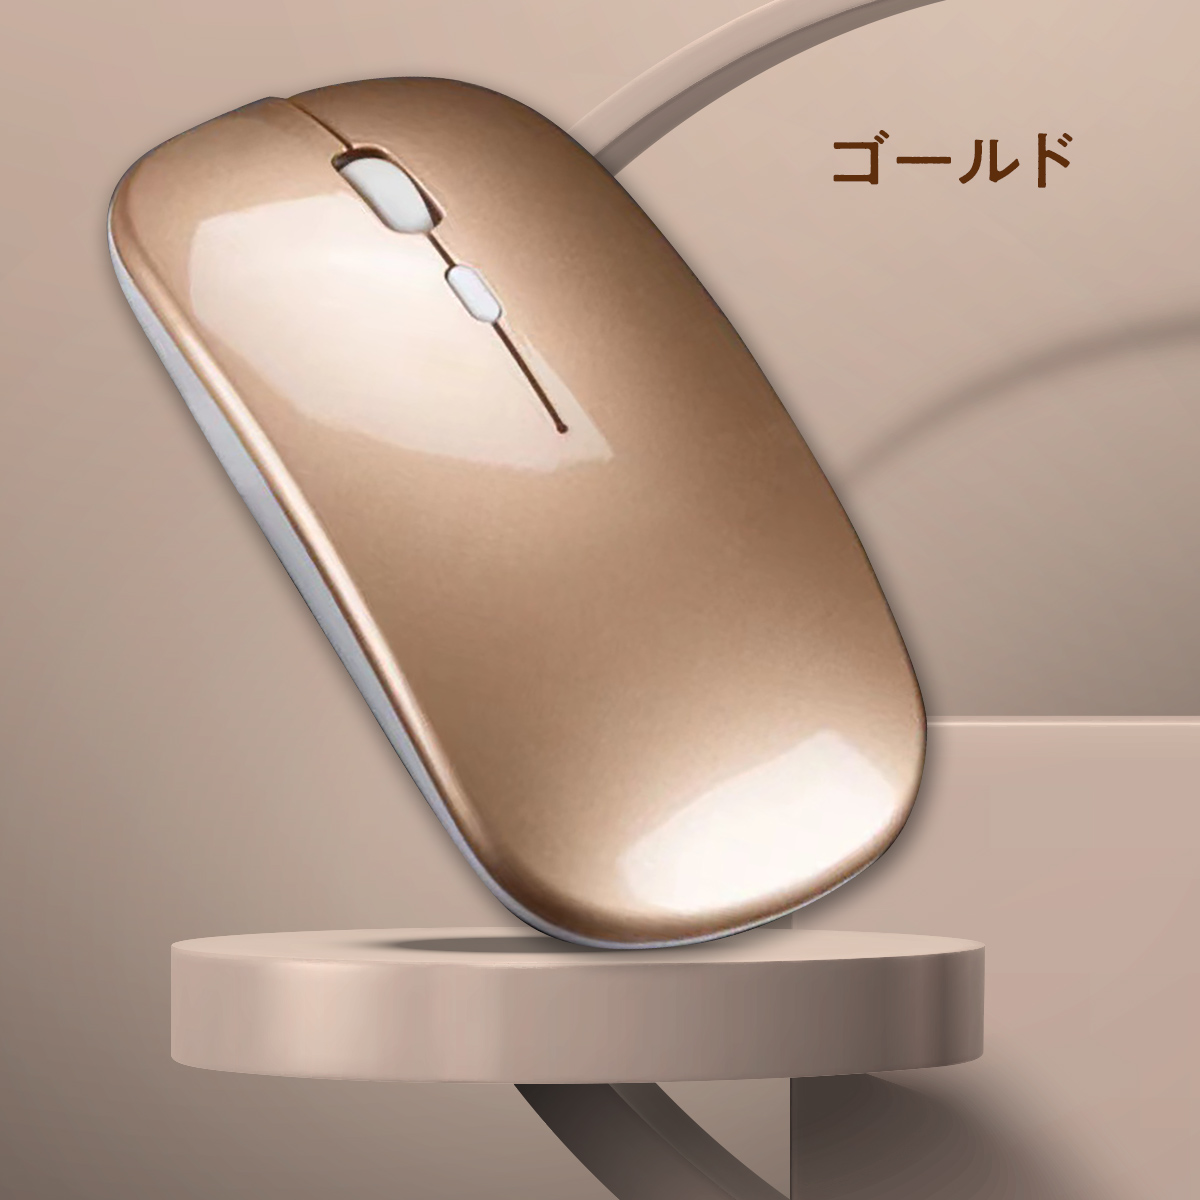 マウス Bluetooth 無線 ワイヤレスマウス 充電式 静音 光学式 超薄型